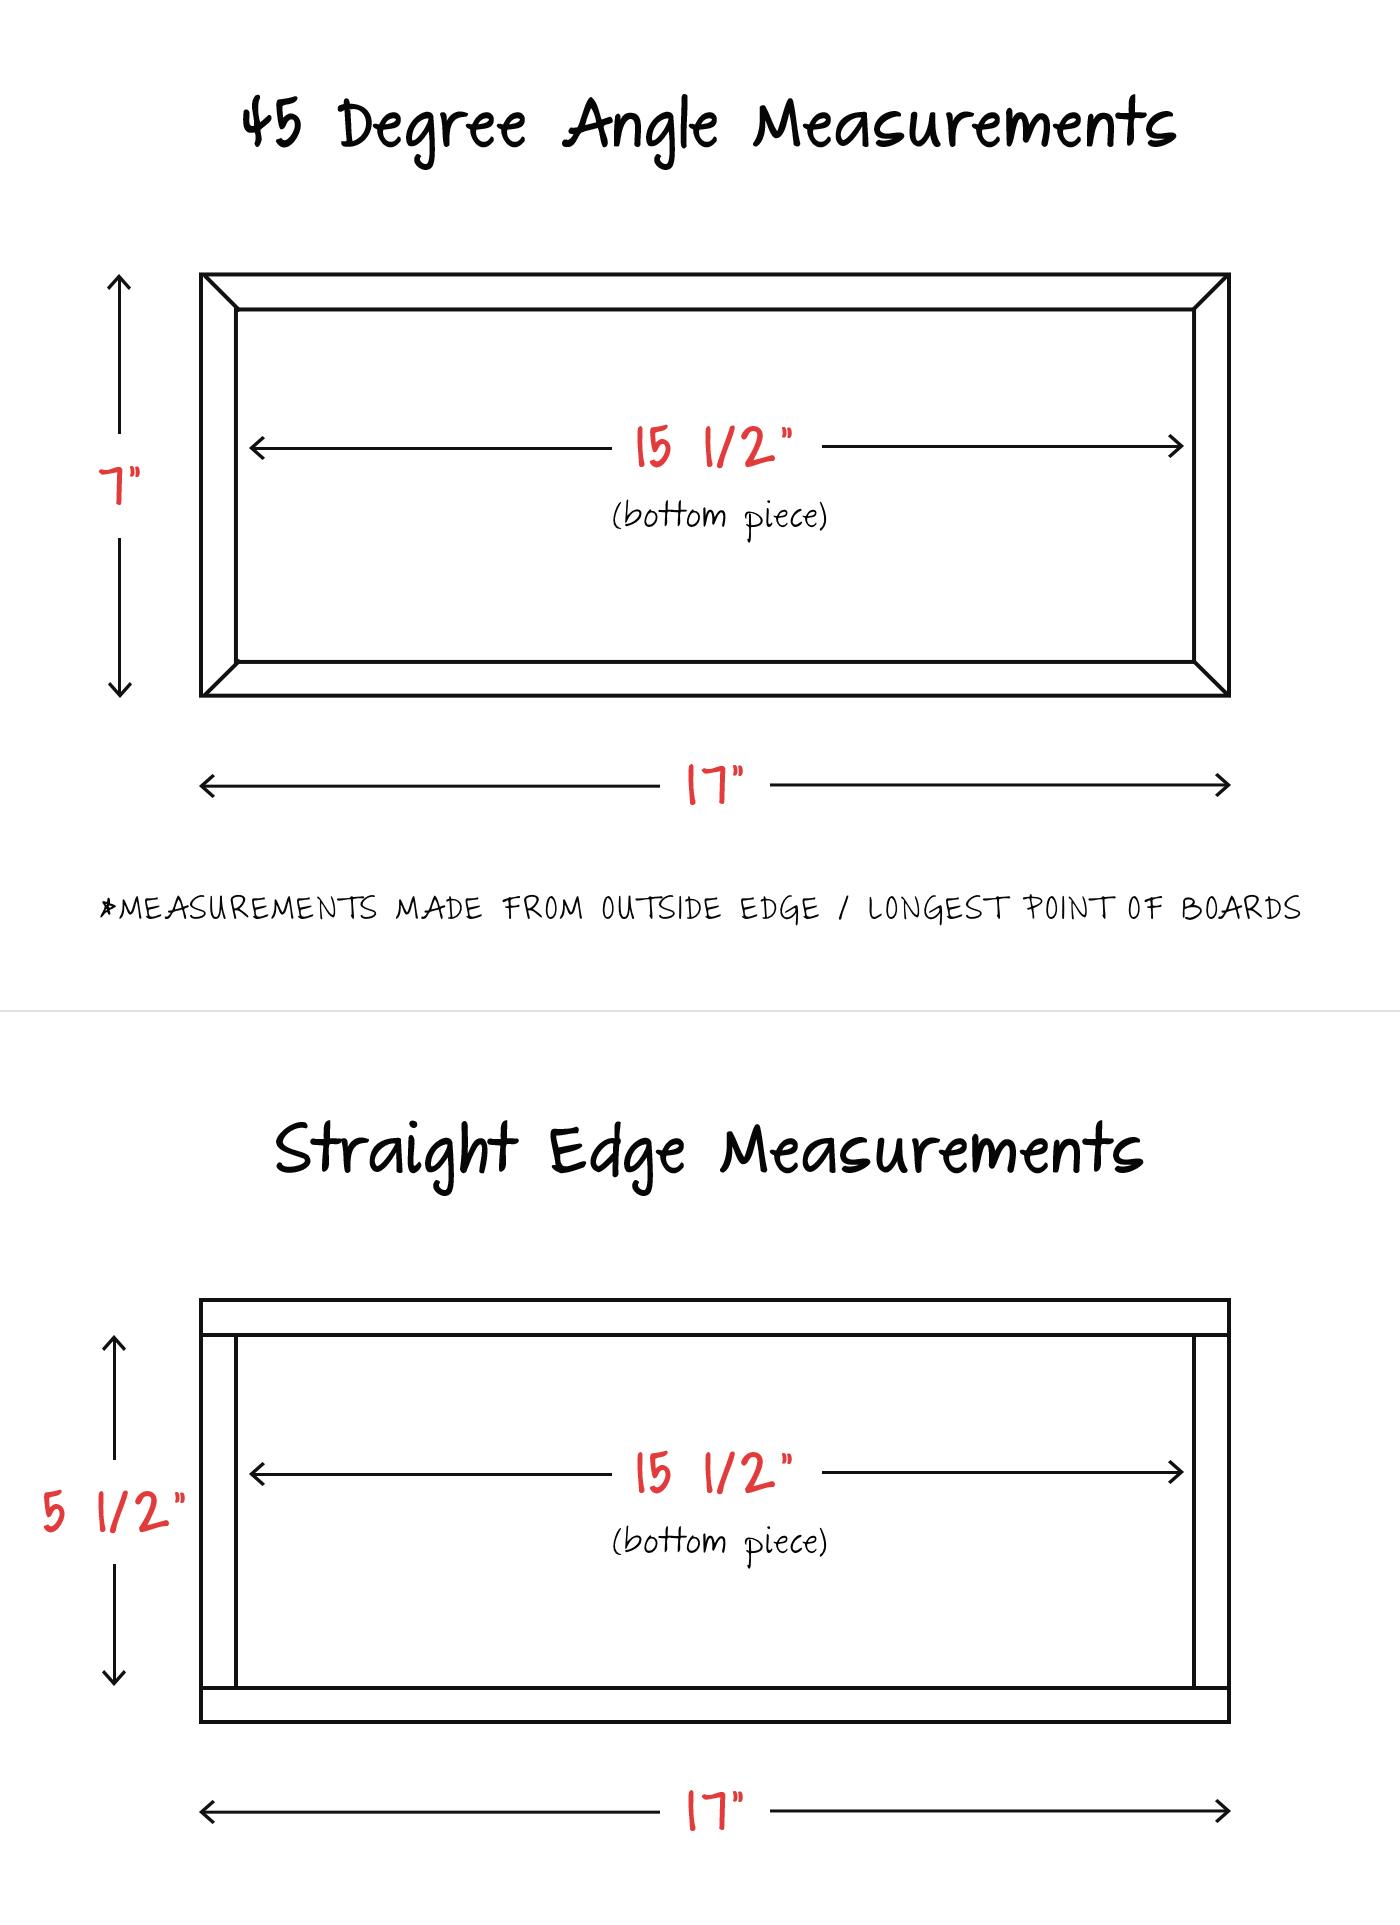 measurement-diagram.jpg